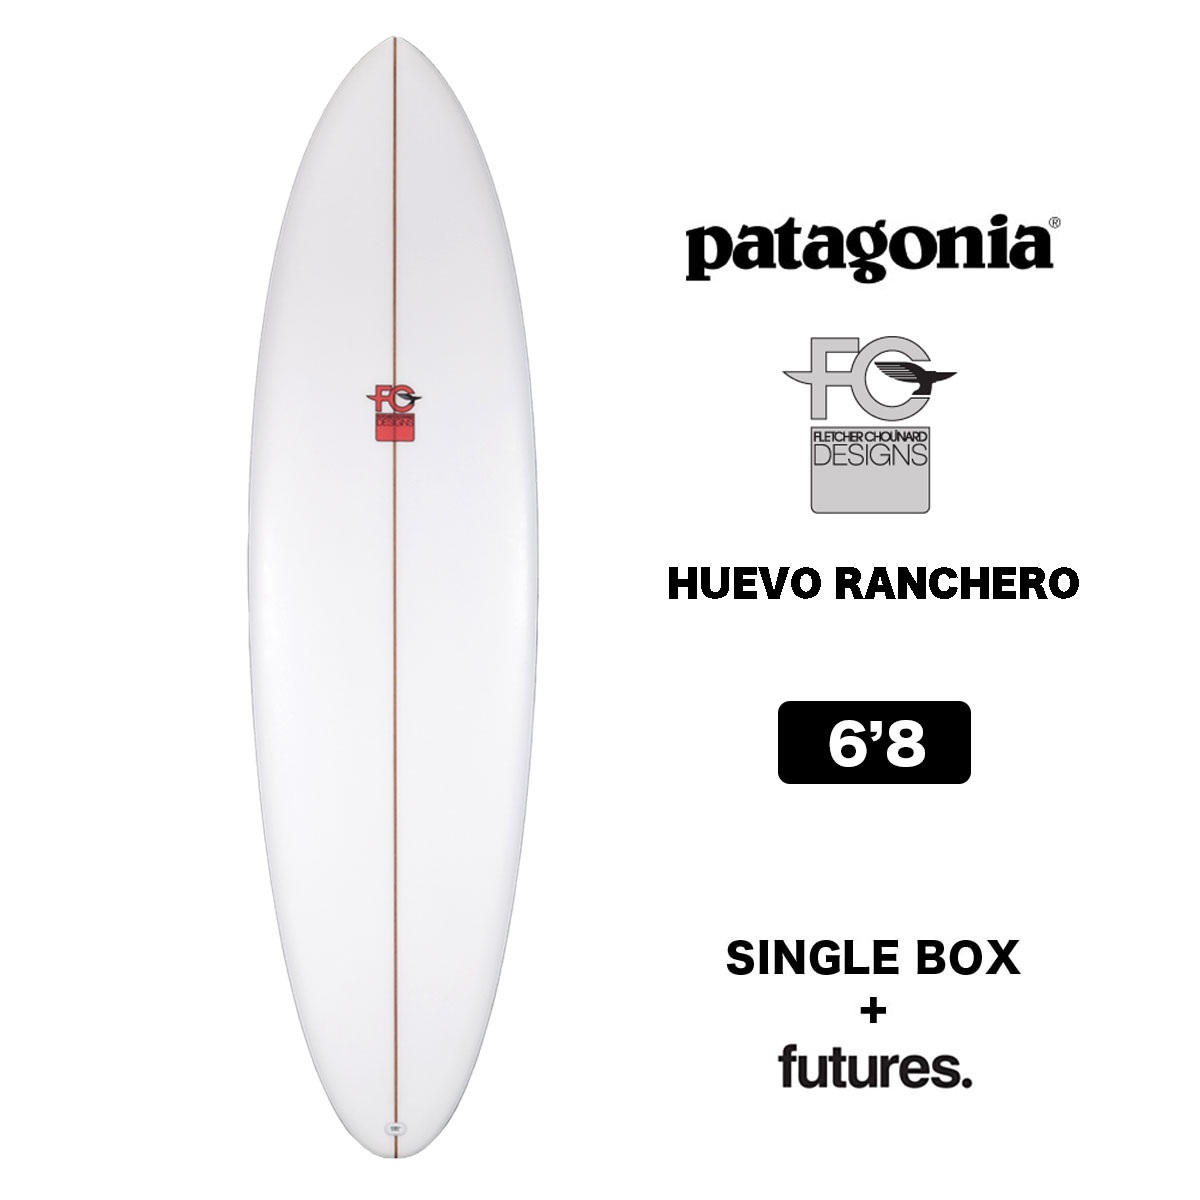 【10%OFF 】Patagonia パタゴニア サーフボード ミッドレングス ウエボ ランチェロ サーフィン 6.8 SURFBOARDS  HUEVO RANCHERO 6'8 clear 正規品 クリアフィッシュ＆ミッド-ジャックオーシャンスポーツ